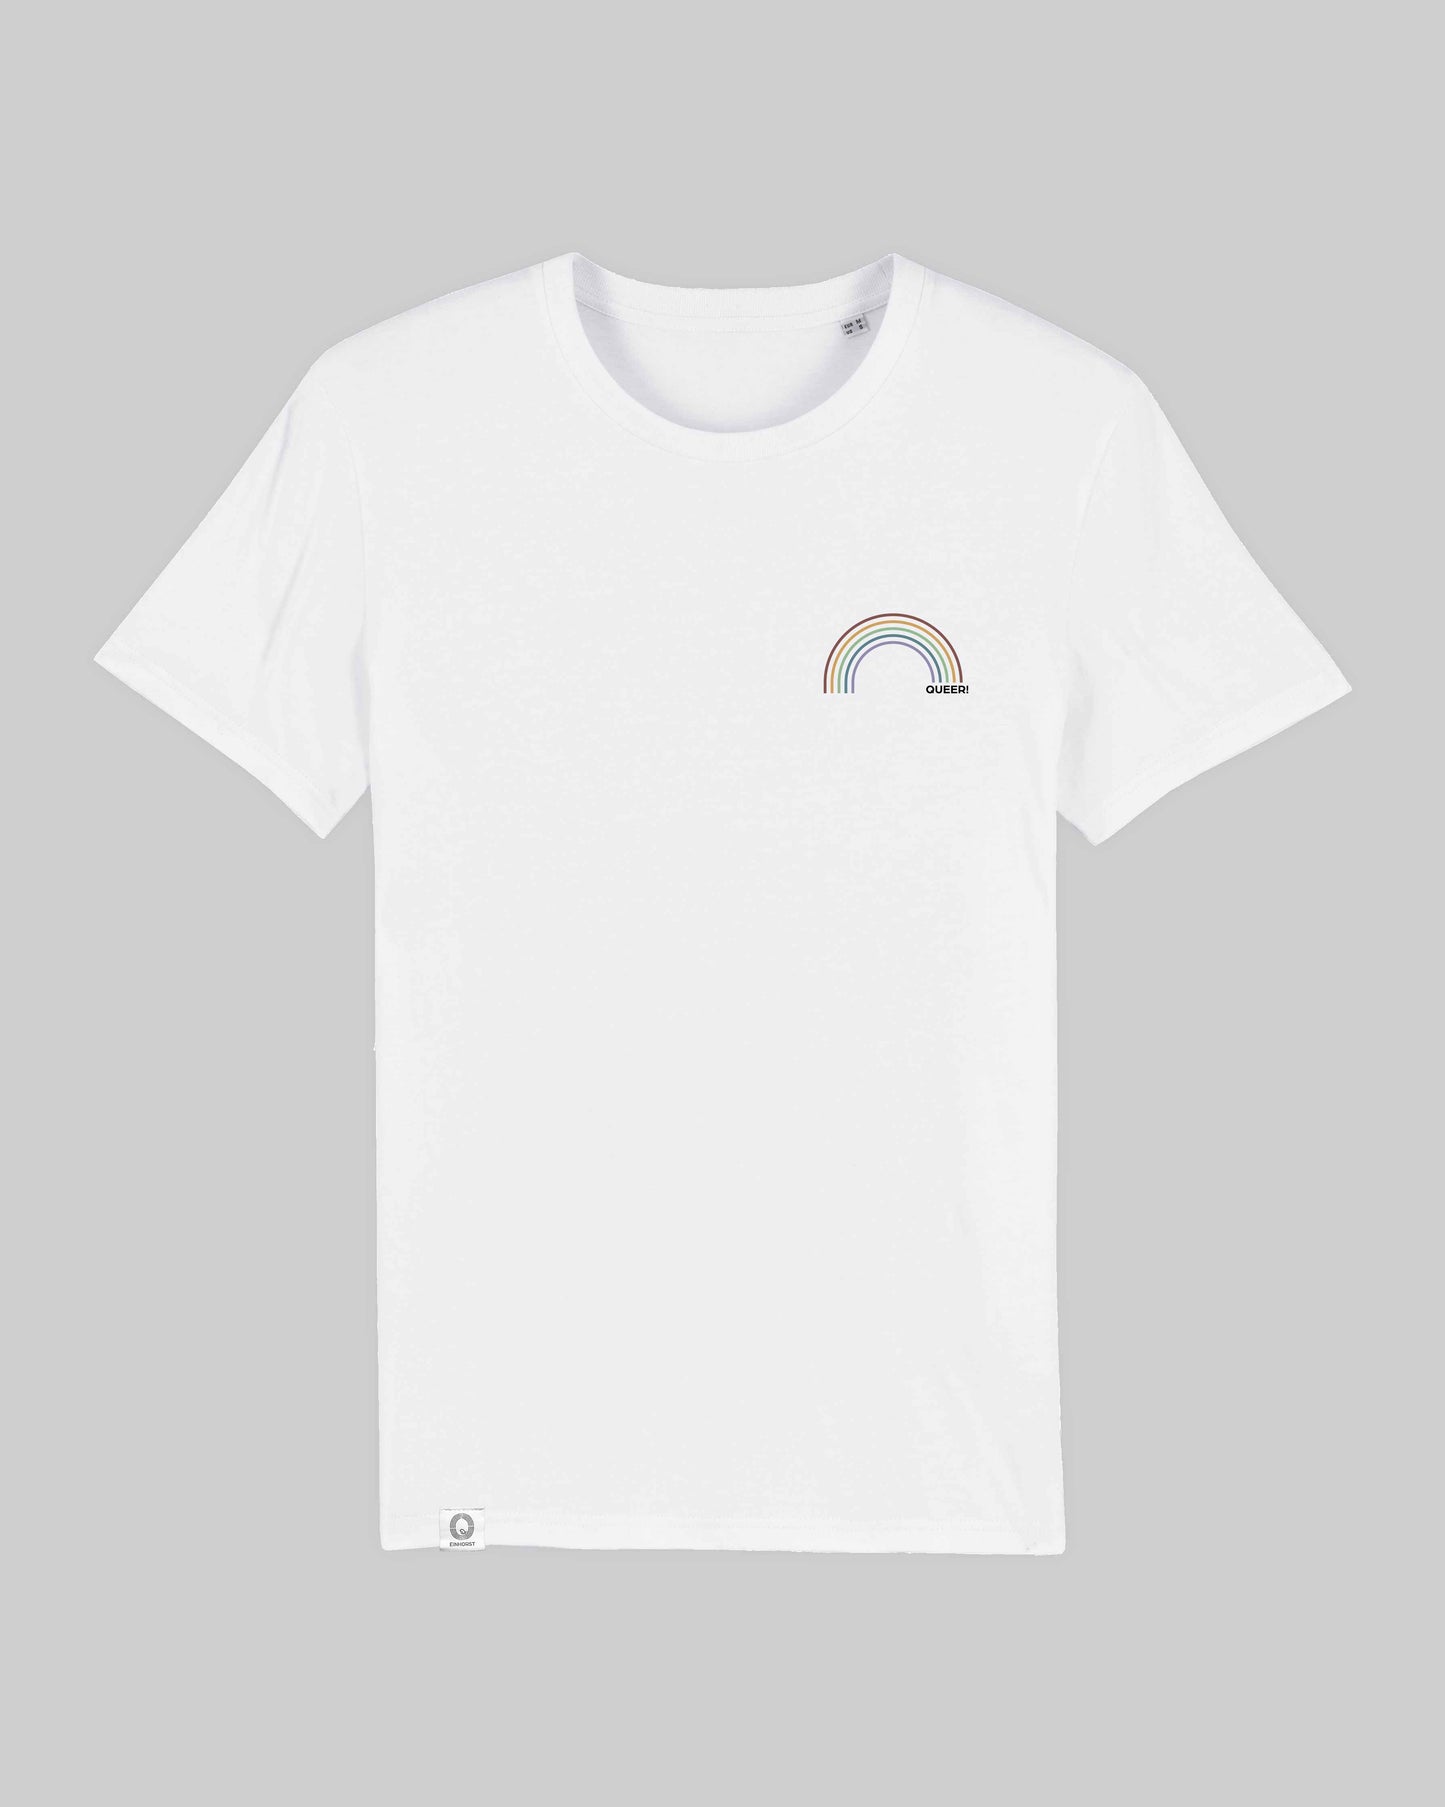 EINHORST® unisex Organic Shirt in Weiß mit dem Motiv "queer Regenbogen" in der Kombination bunter Regenbogen mit schwarzer Schrift, Bild von Shirt von vorne